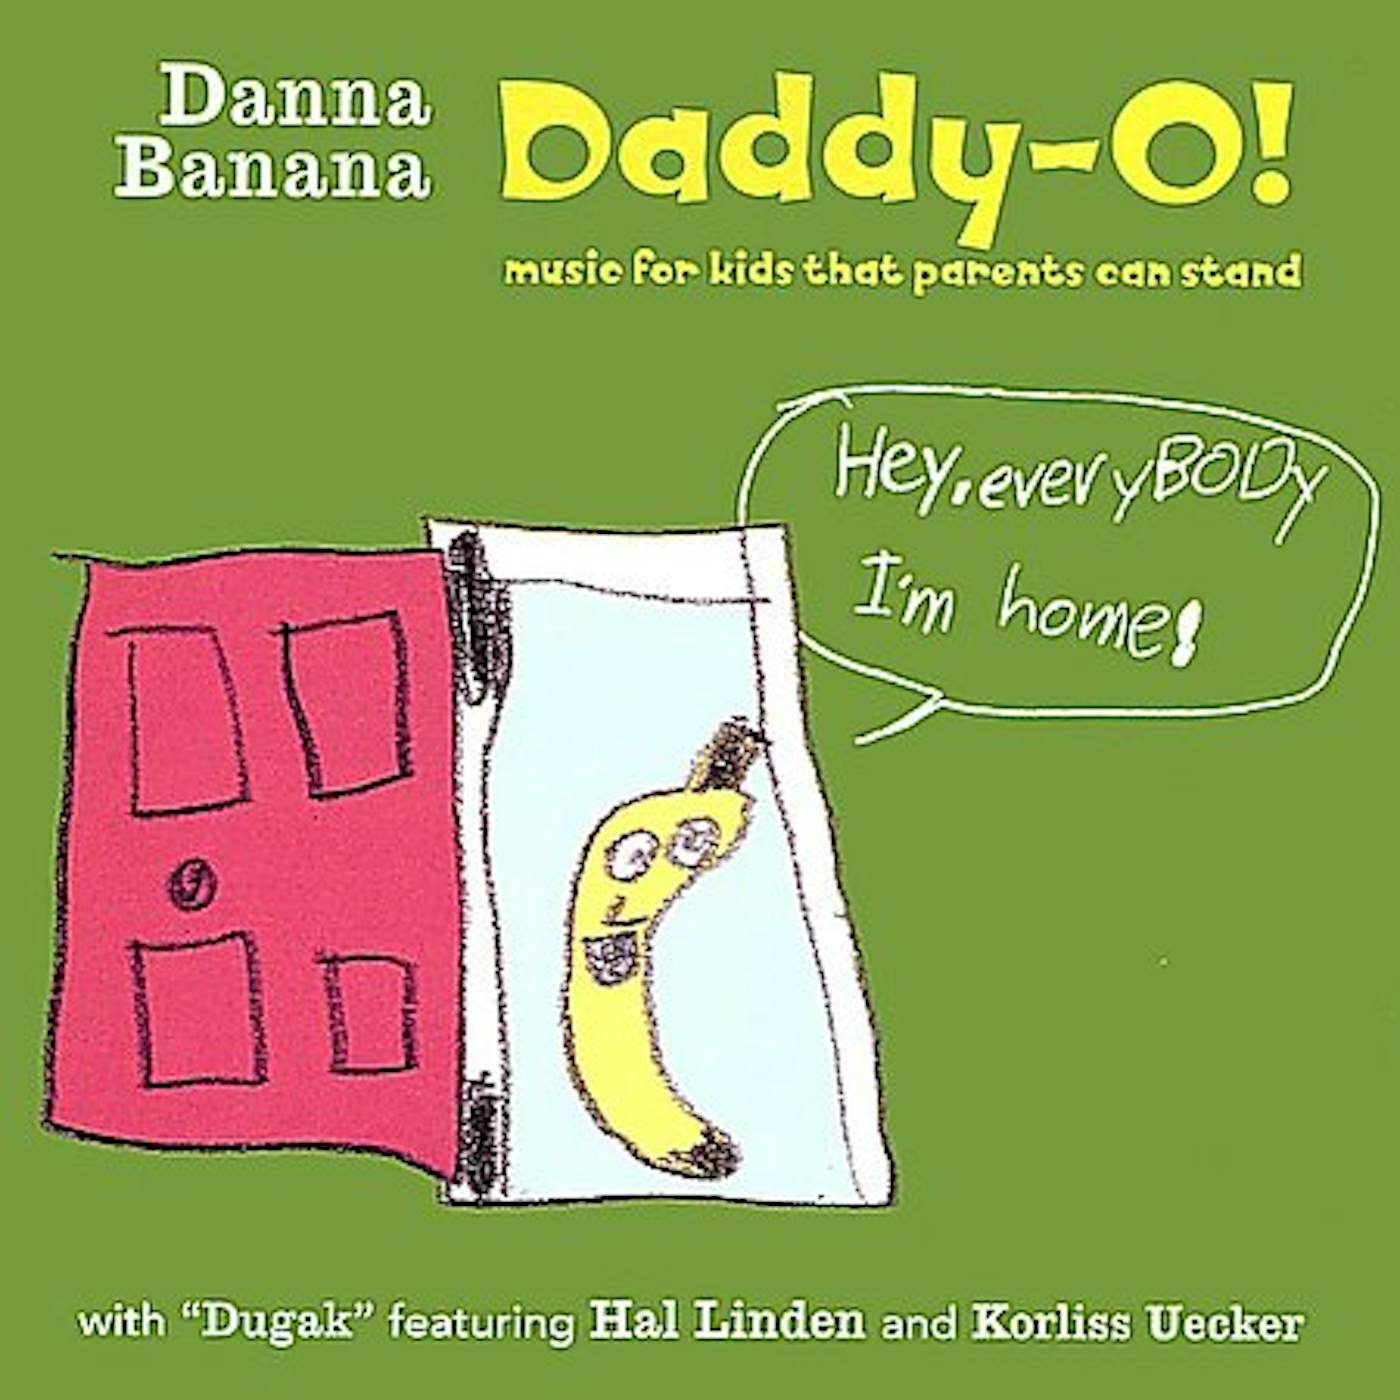 Danna Banana DADDY-O! CD